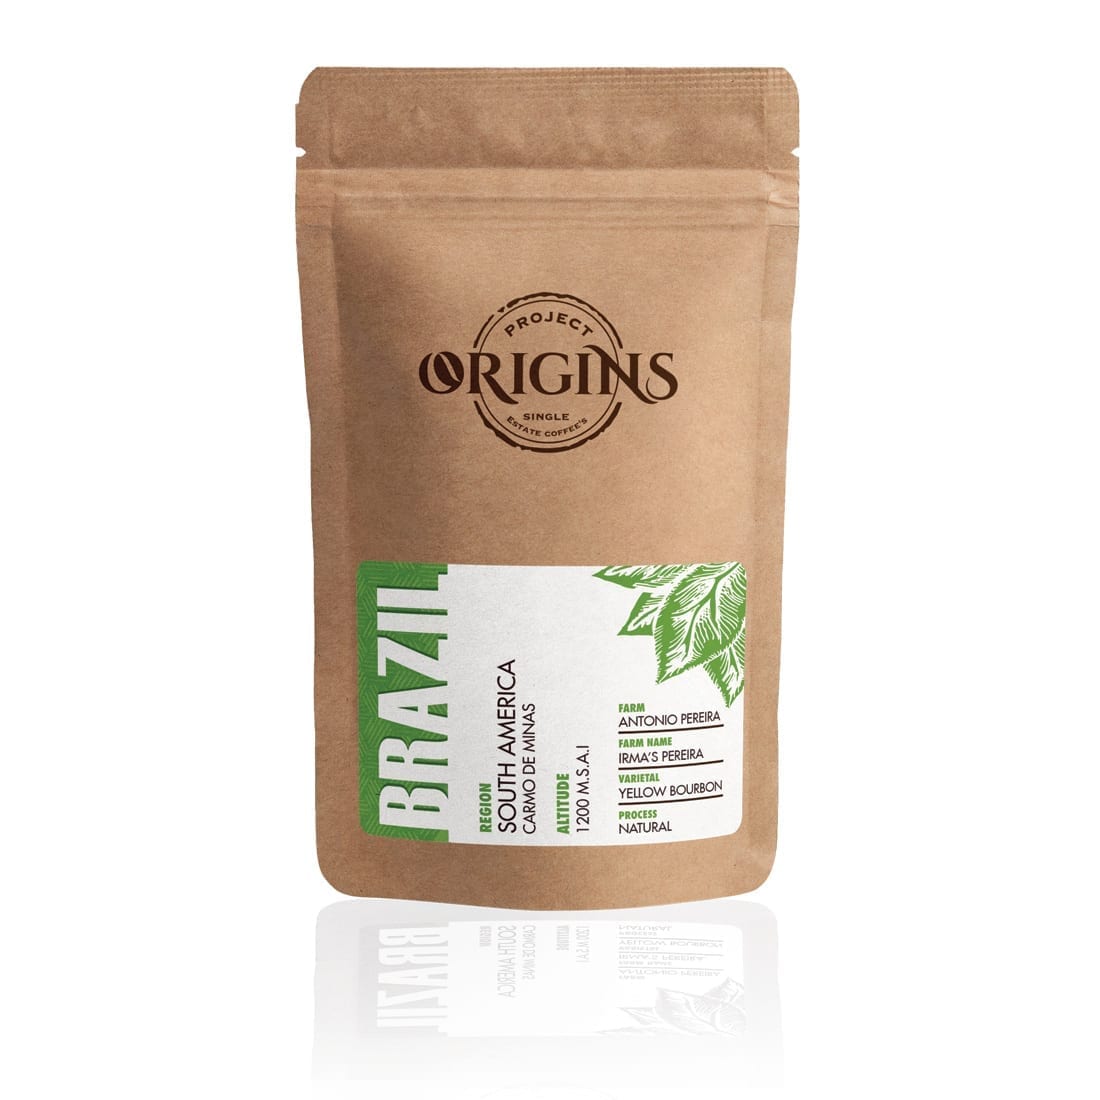 JDE Origins Coffee Packaging Design 2